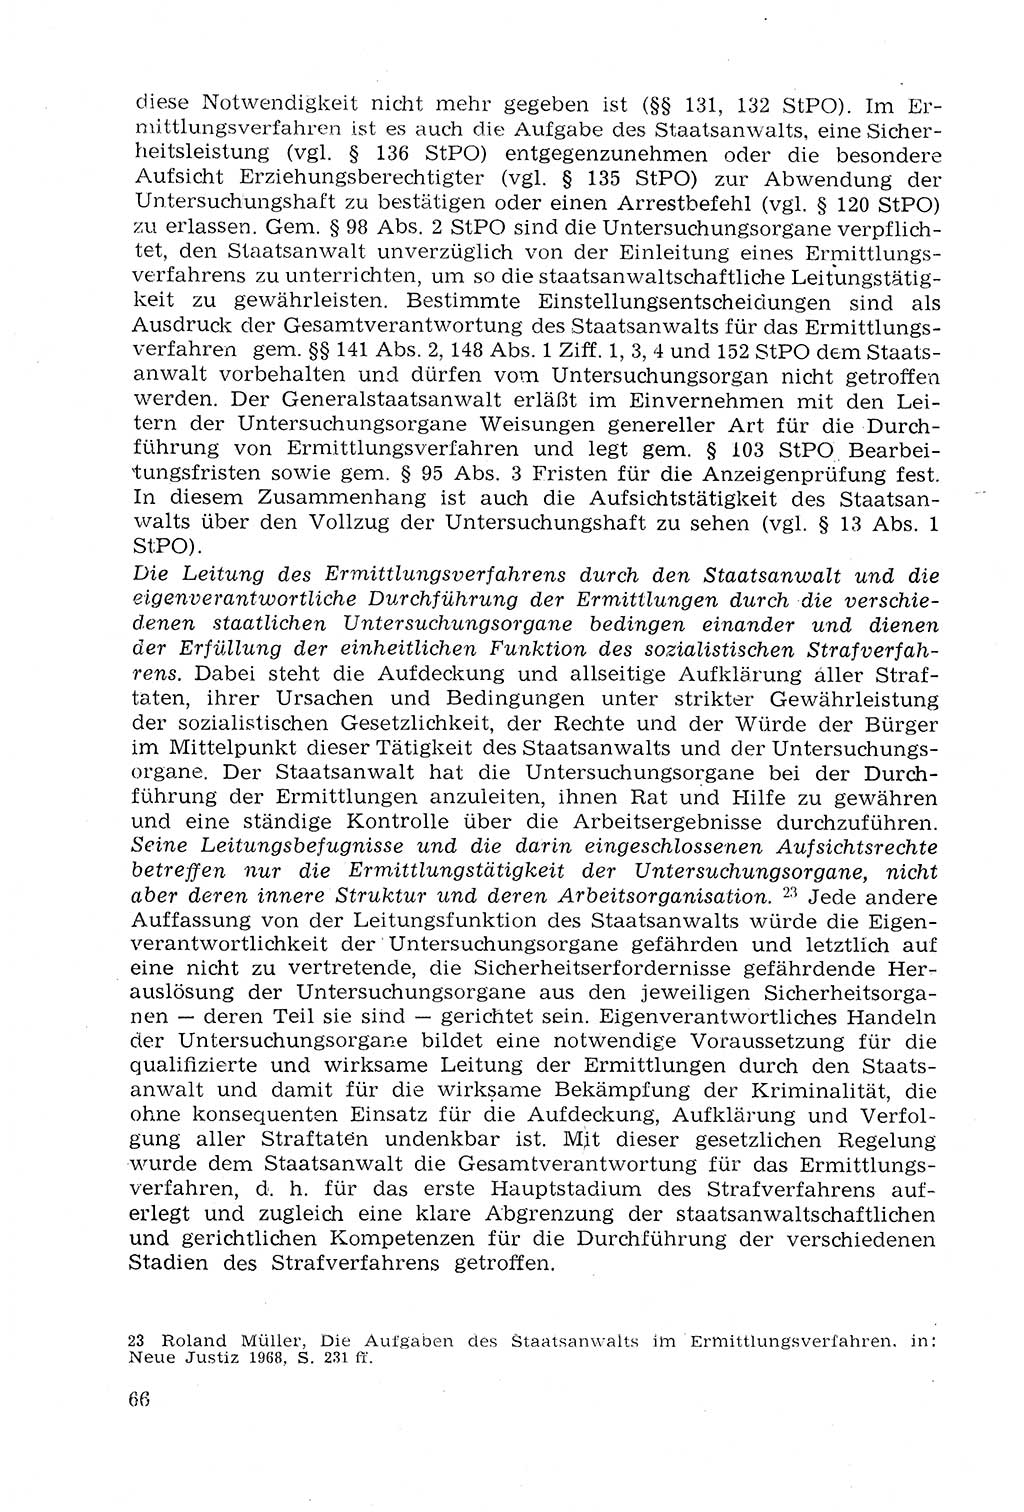 Strafprozeßrecht der DDR (Deutsche Demokratische Republik), Lehrmaterial 1969, Seite 66 (Strafprozeßr. DDR Lehrmat. 1969, S. 66)